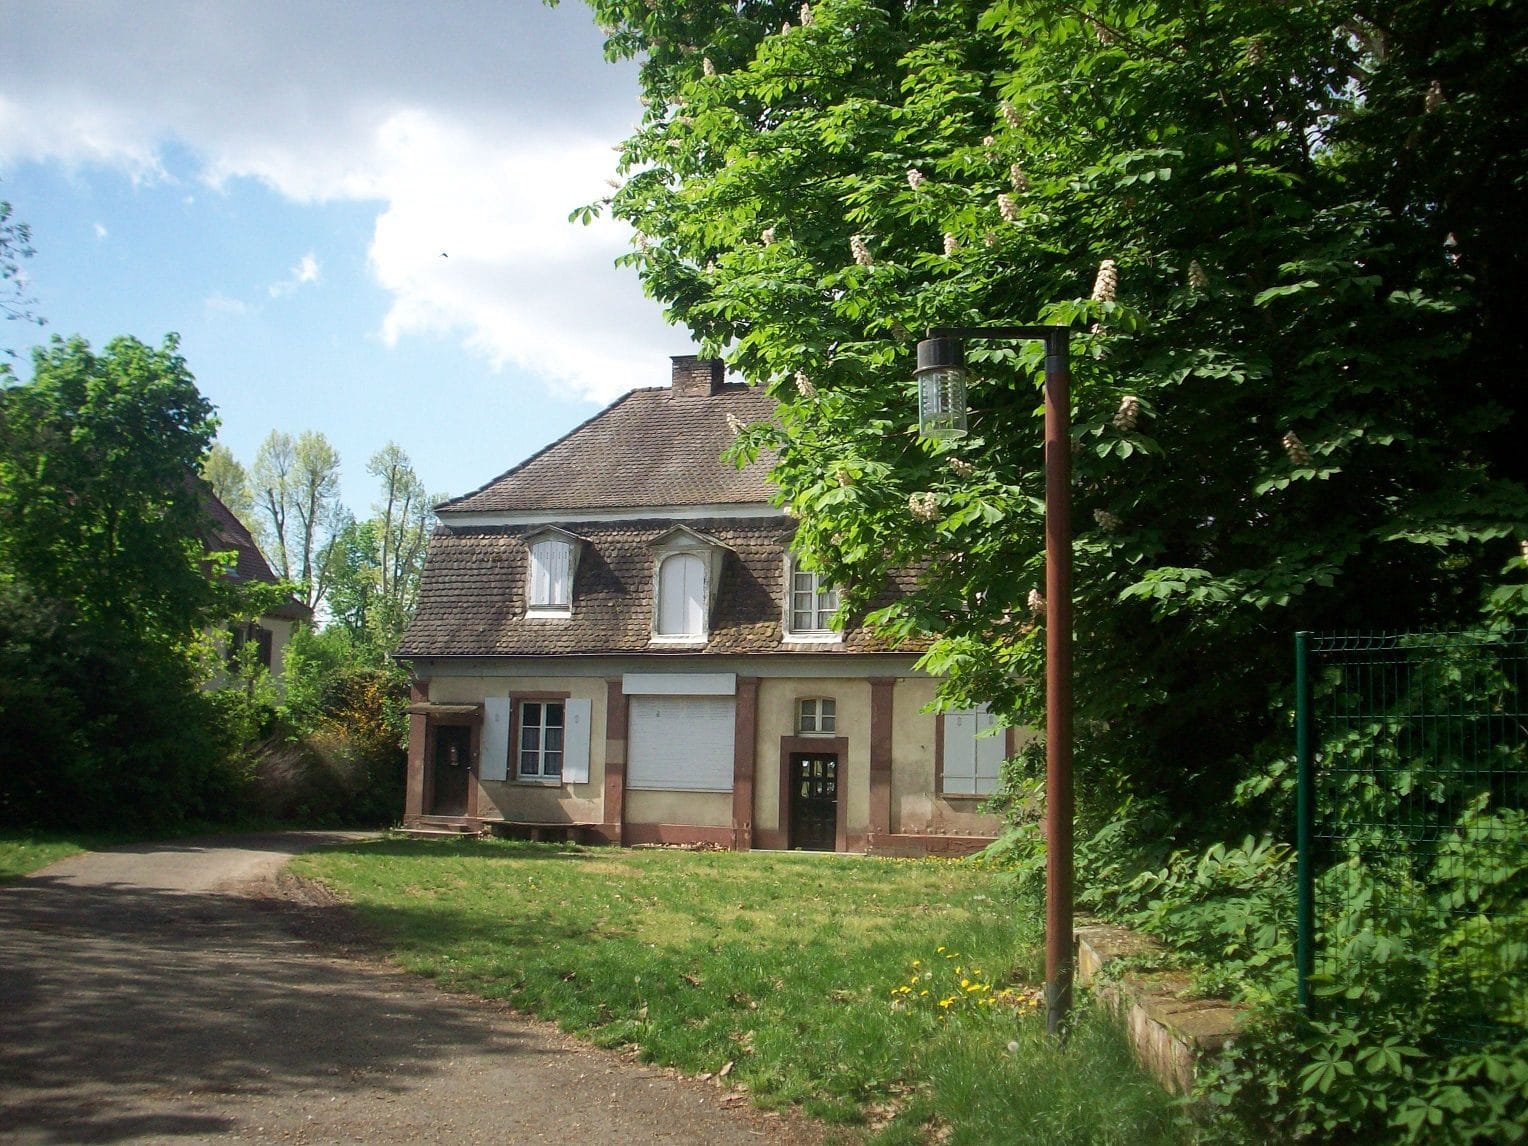 L'extension à cette maison cachée derrière la villa devrait permettre de gagner de l'espace (Photo DL/Rue 89 Strasbourg/cc)